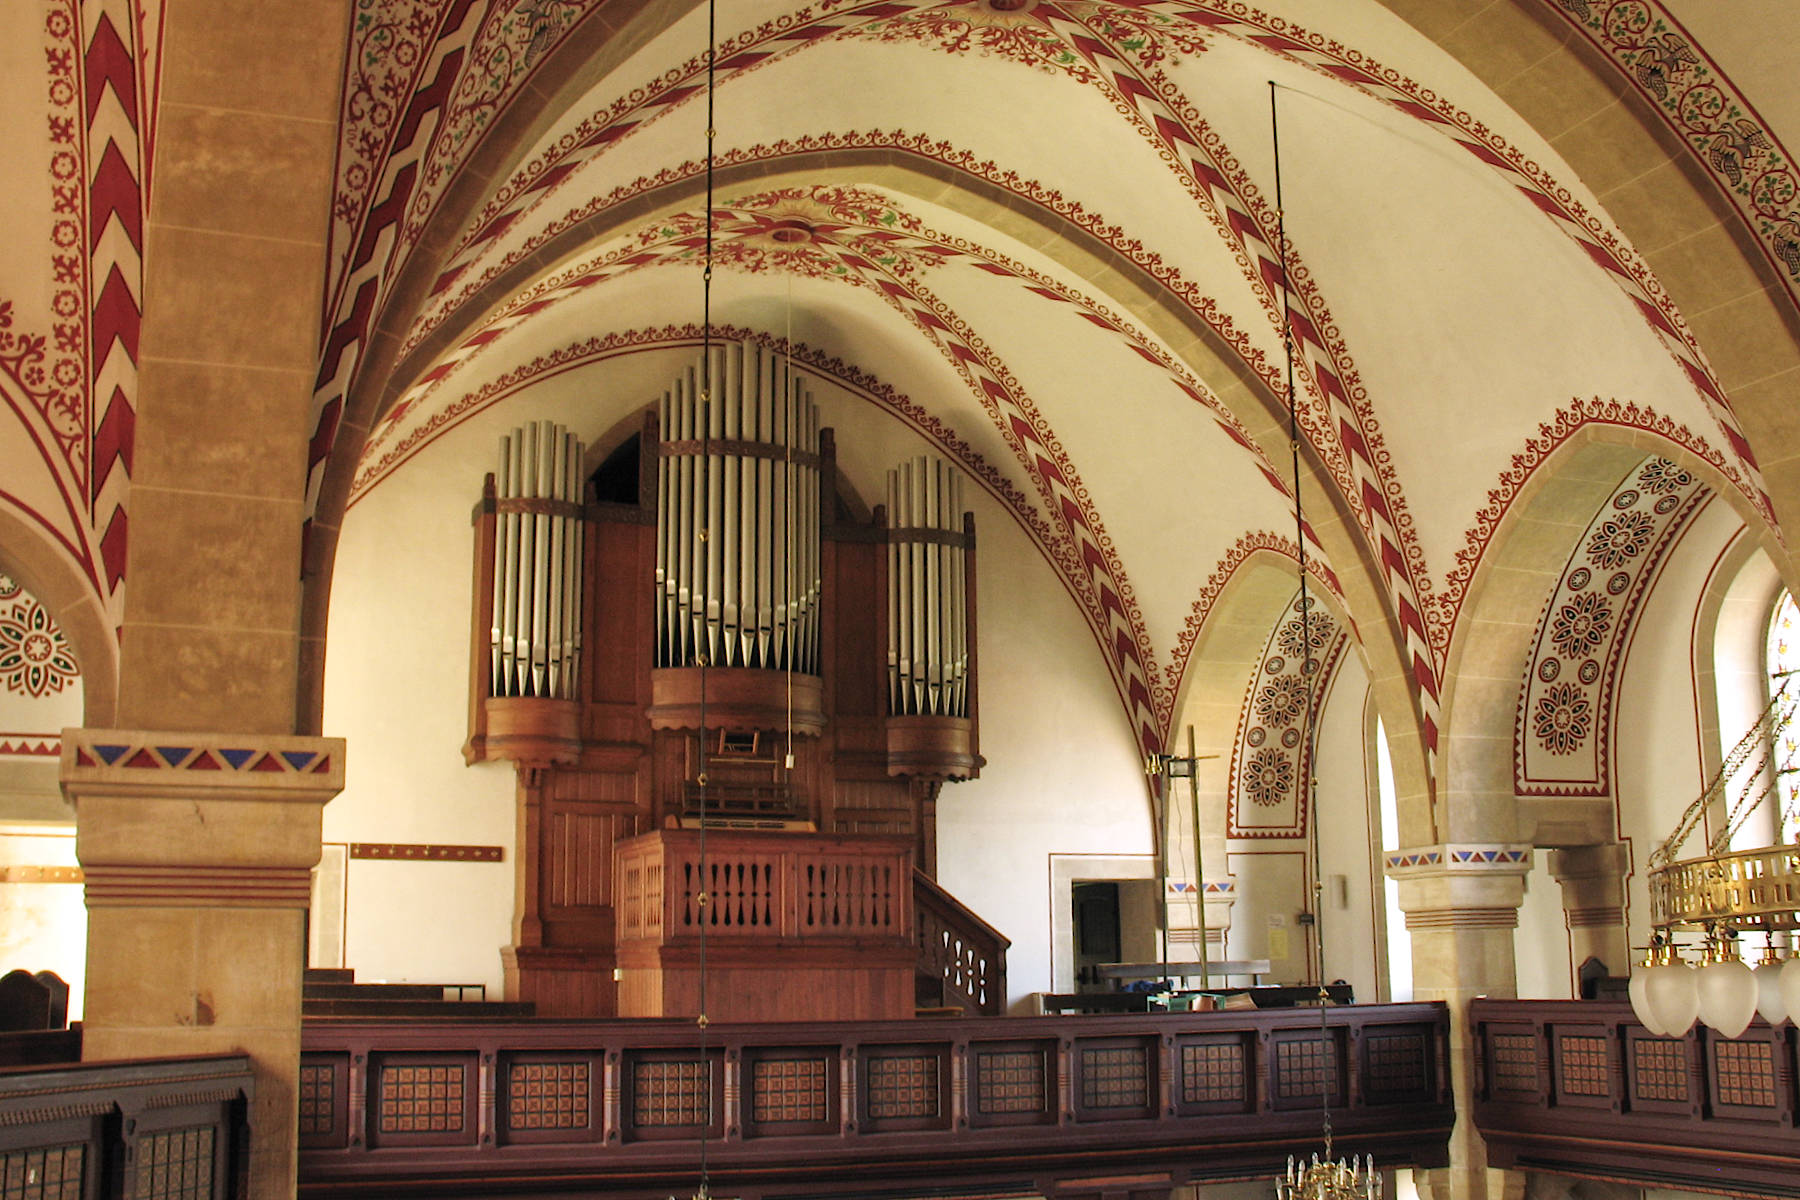 Orgel Bennigsen